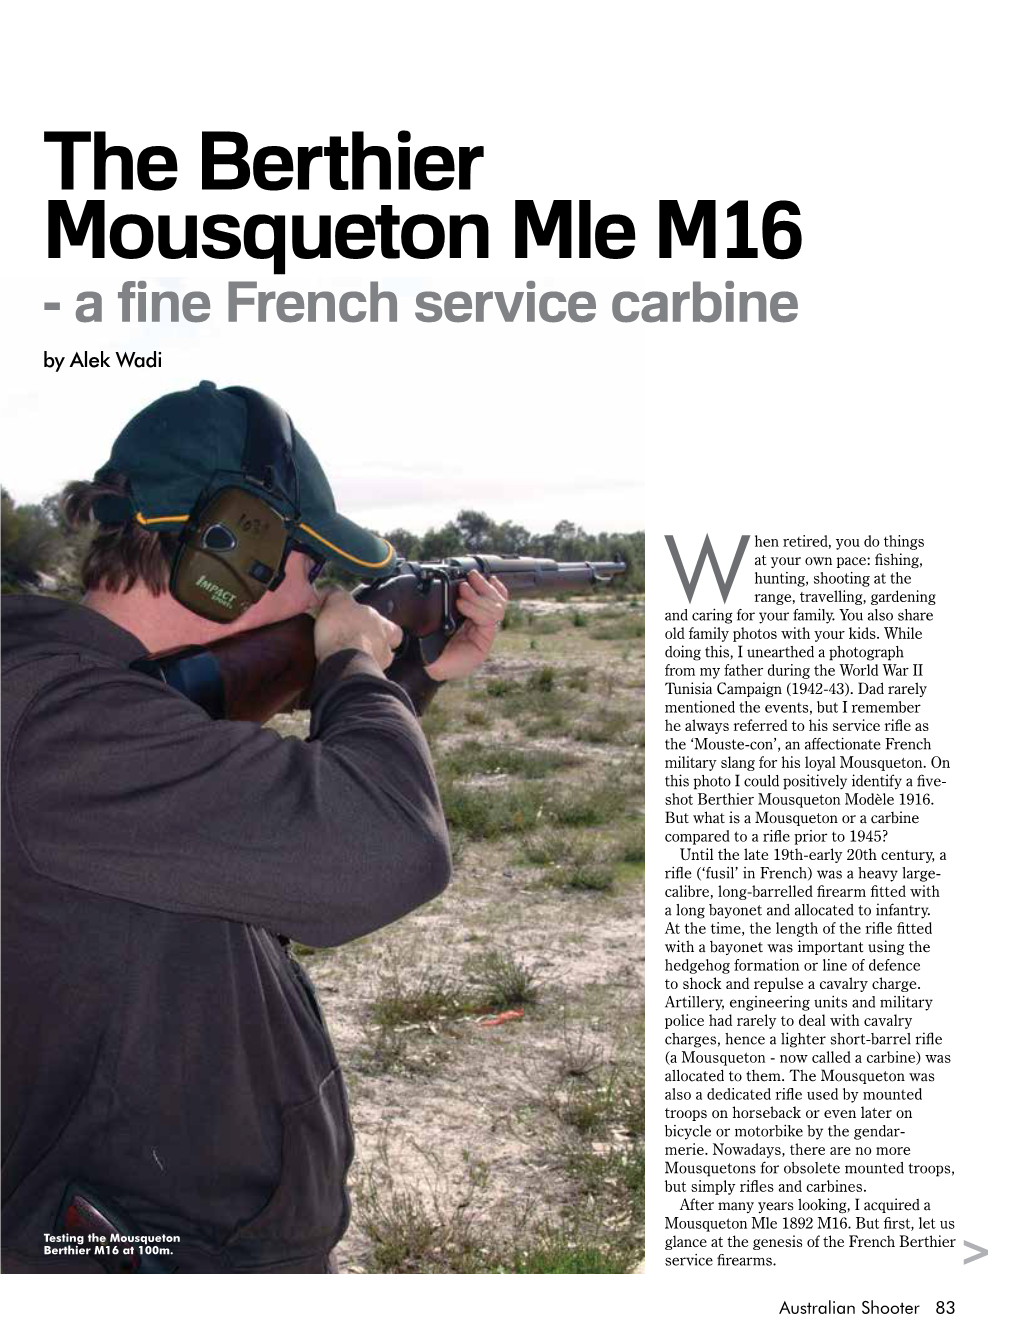 The Berthier Mousqueton Mle M16 - a Fine French Service Carbine by Alek Wadi